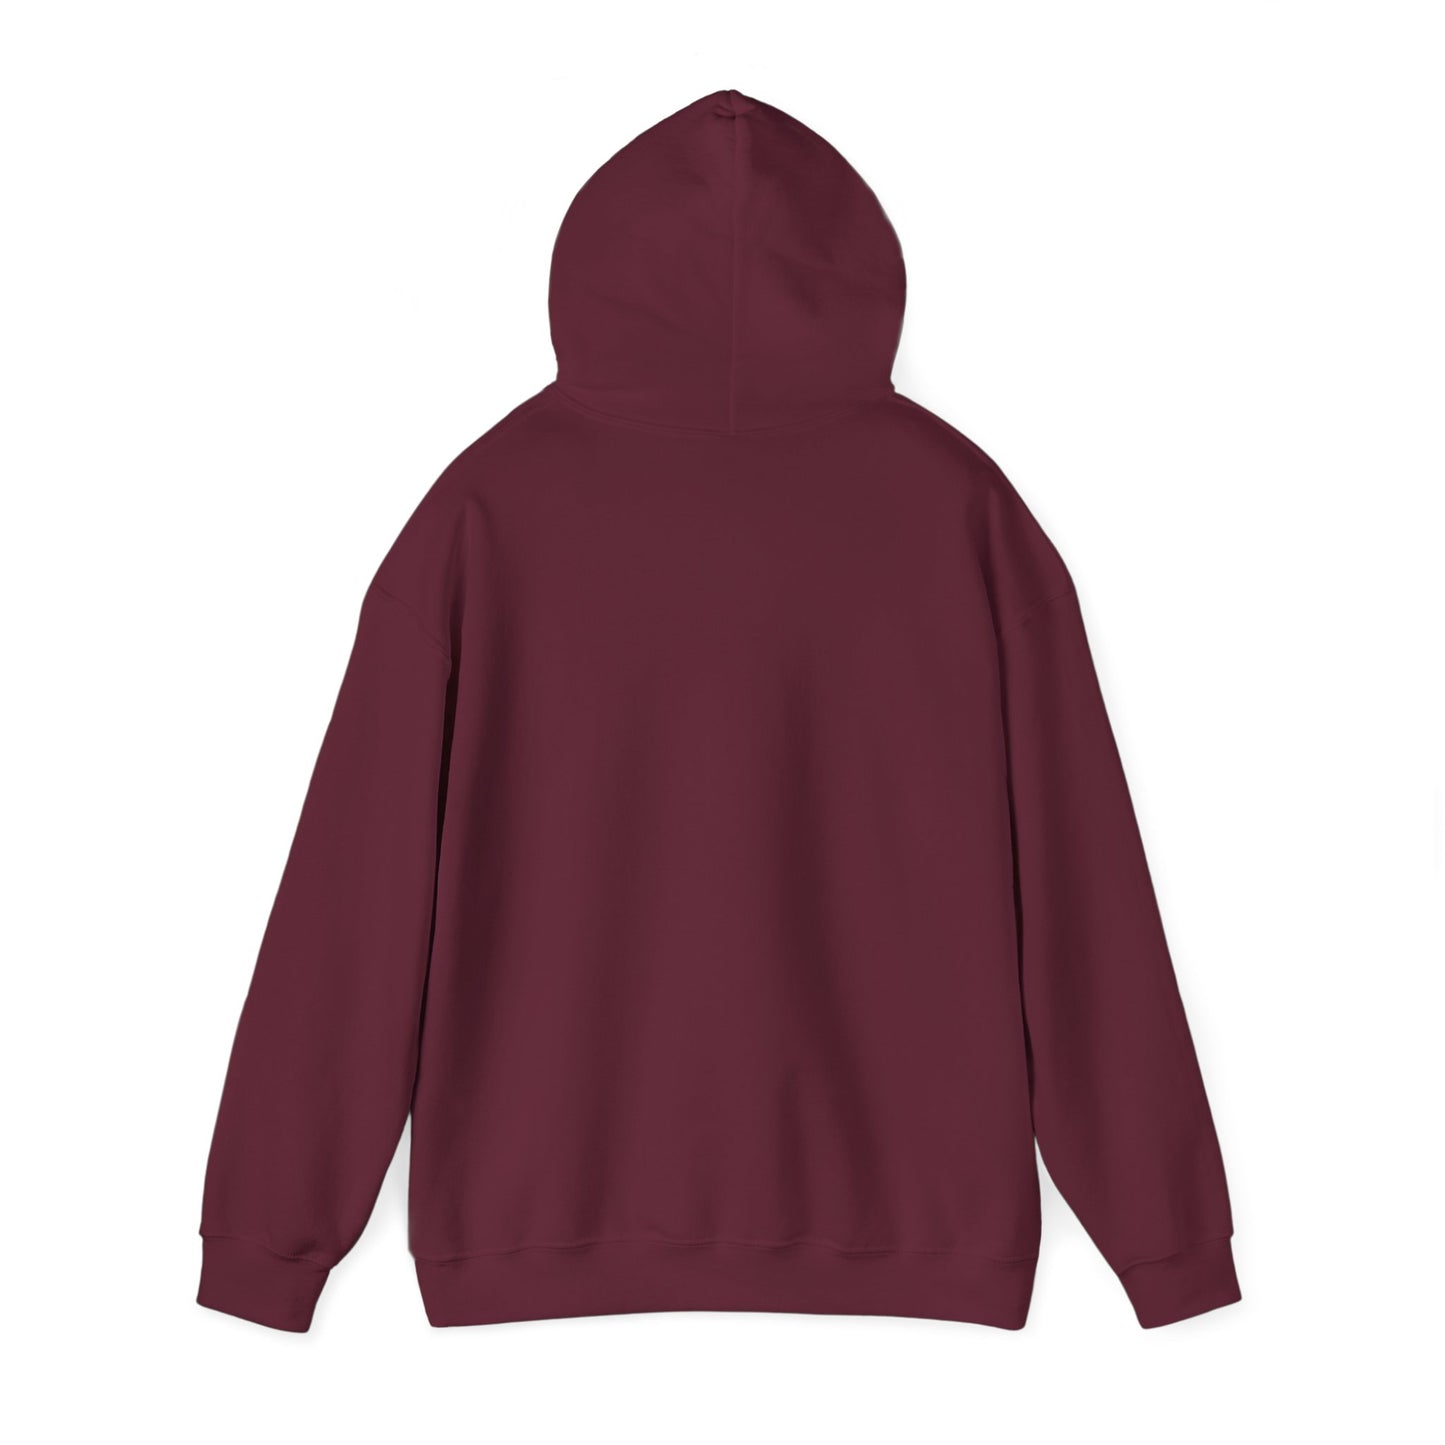 ‘Munching’ Surin, Thailand - Unisex Heavy Blend™ Hooded Sweatshirt